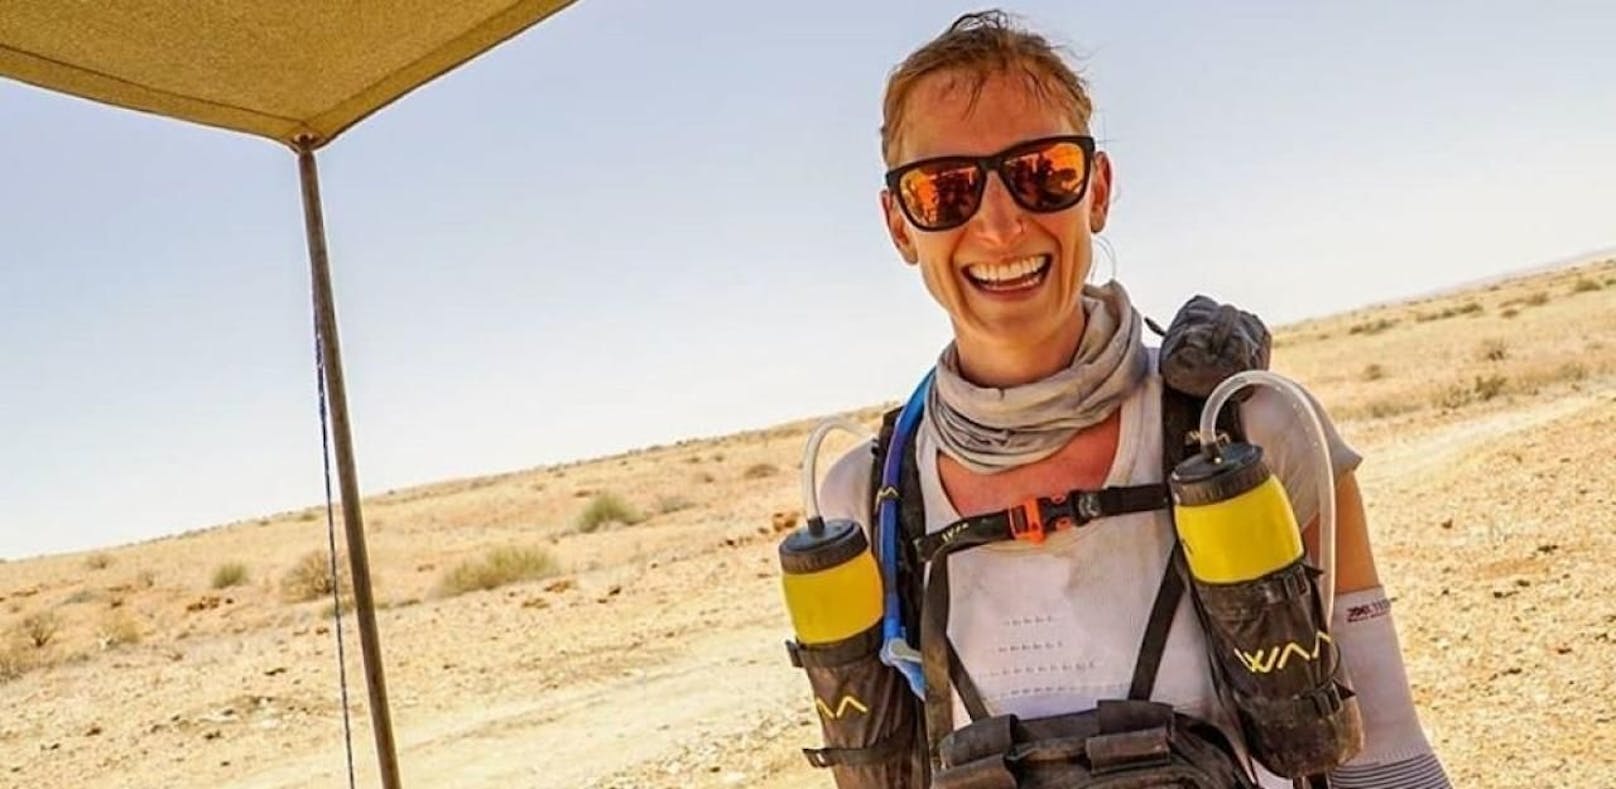 250-km-Lauf durch Wüste: Wienerin stellt Rekord auf